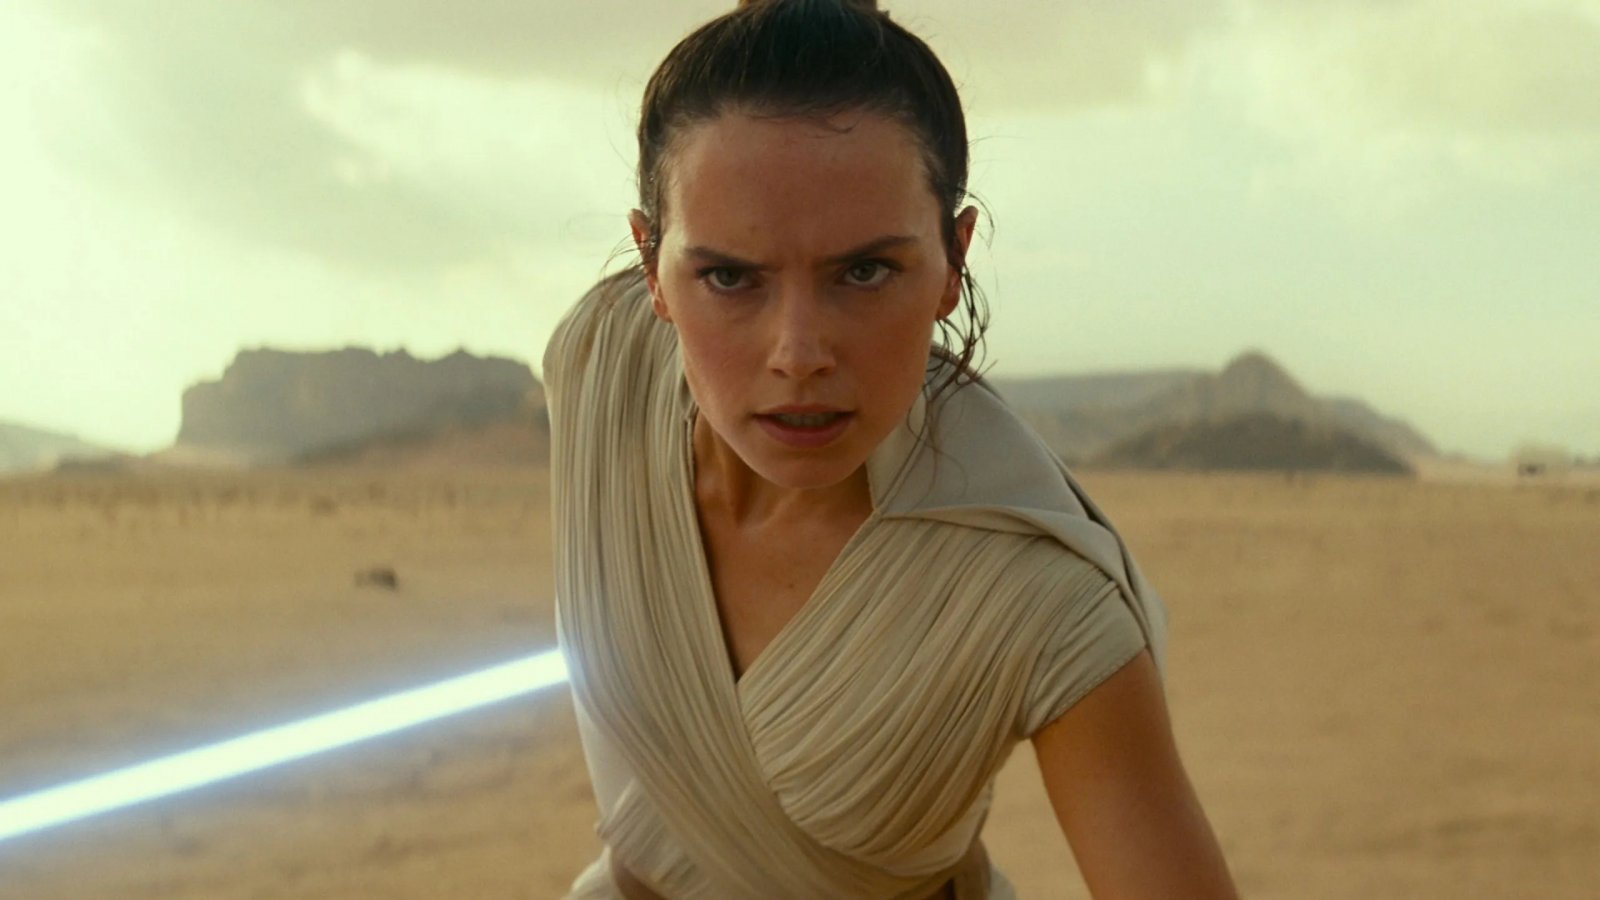 Star Wars Episodio 10, Daisy Ridley parla del film e di alcune teorie sul suo personaggio